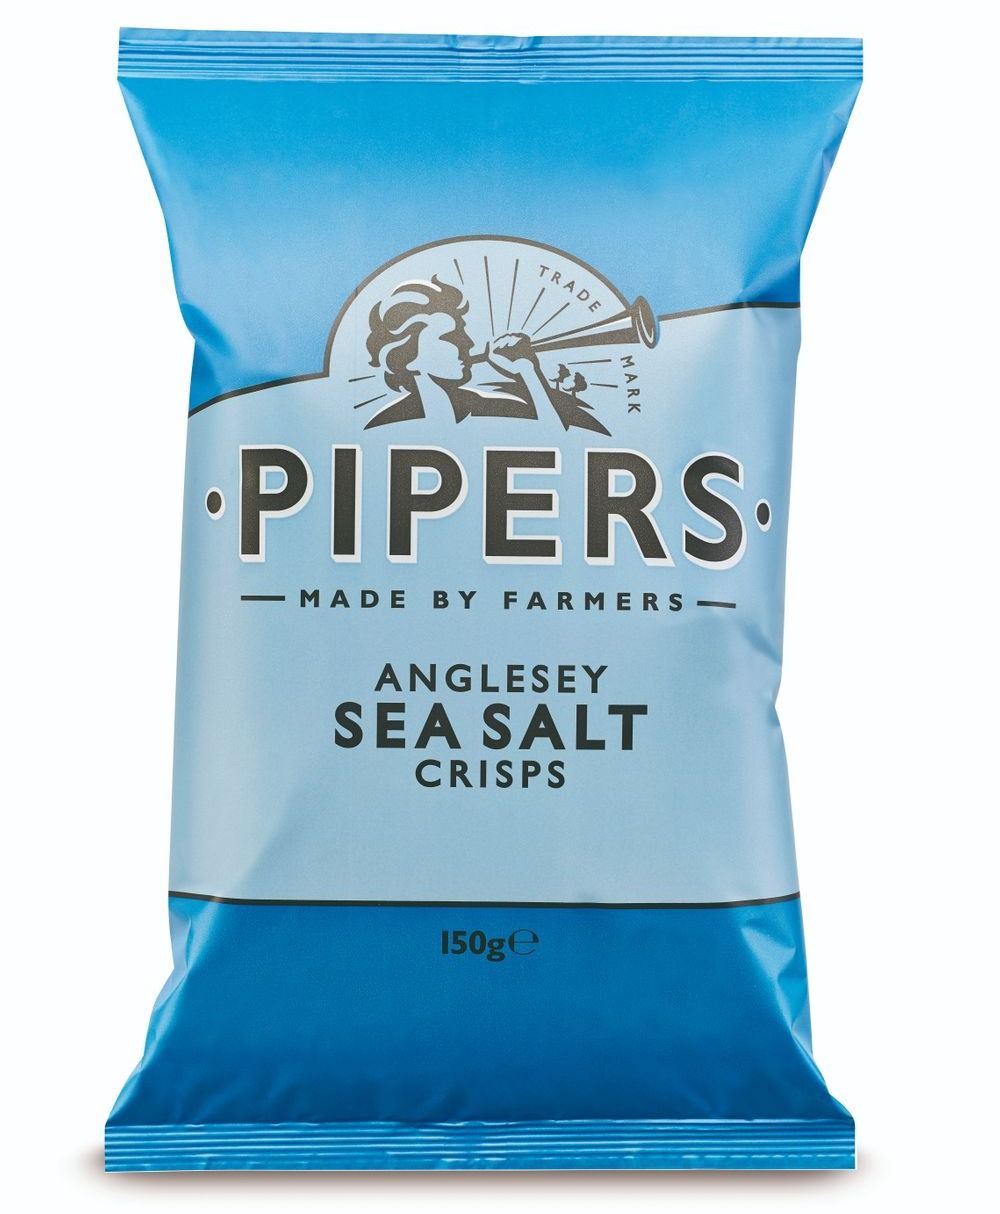 Anglesey Sea Salt Crisps